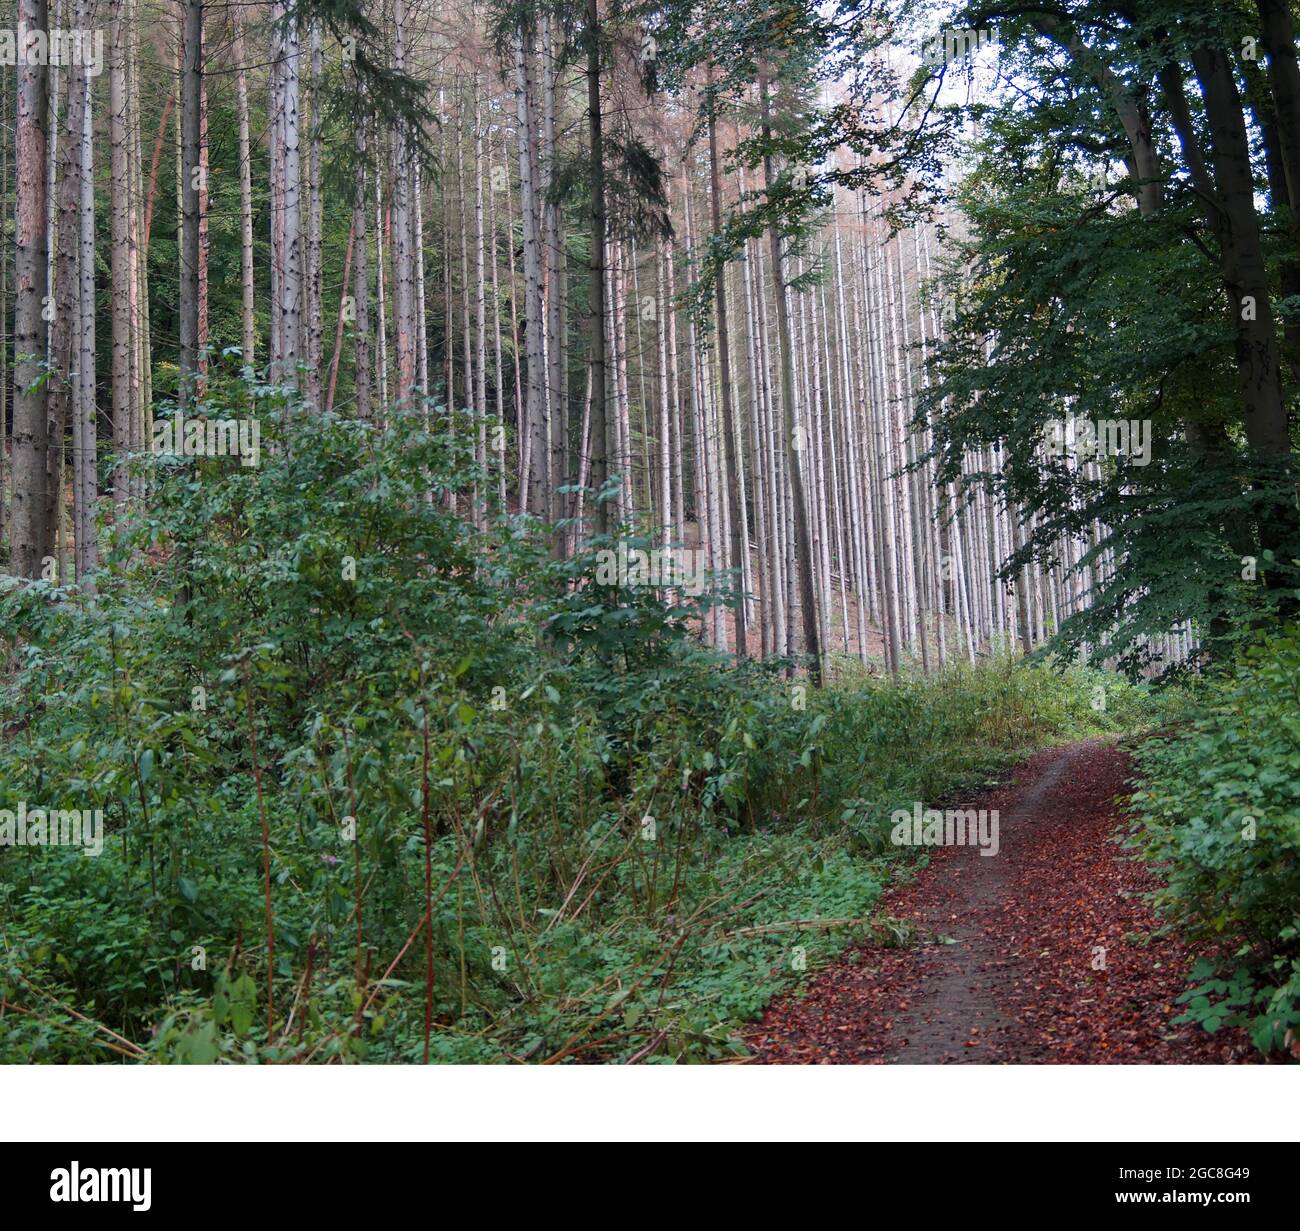 Ein Weg durch einen seltsamen Wald. Die Bäume auf der linken Seite sind sterbende Nadelbäume. Sie sind hellgrau. Neben dem Weg sind grüne Sträucher. Stockfoto